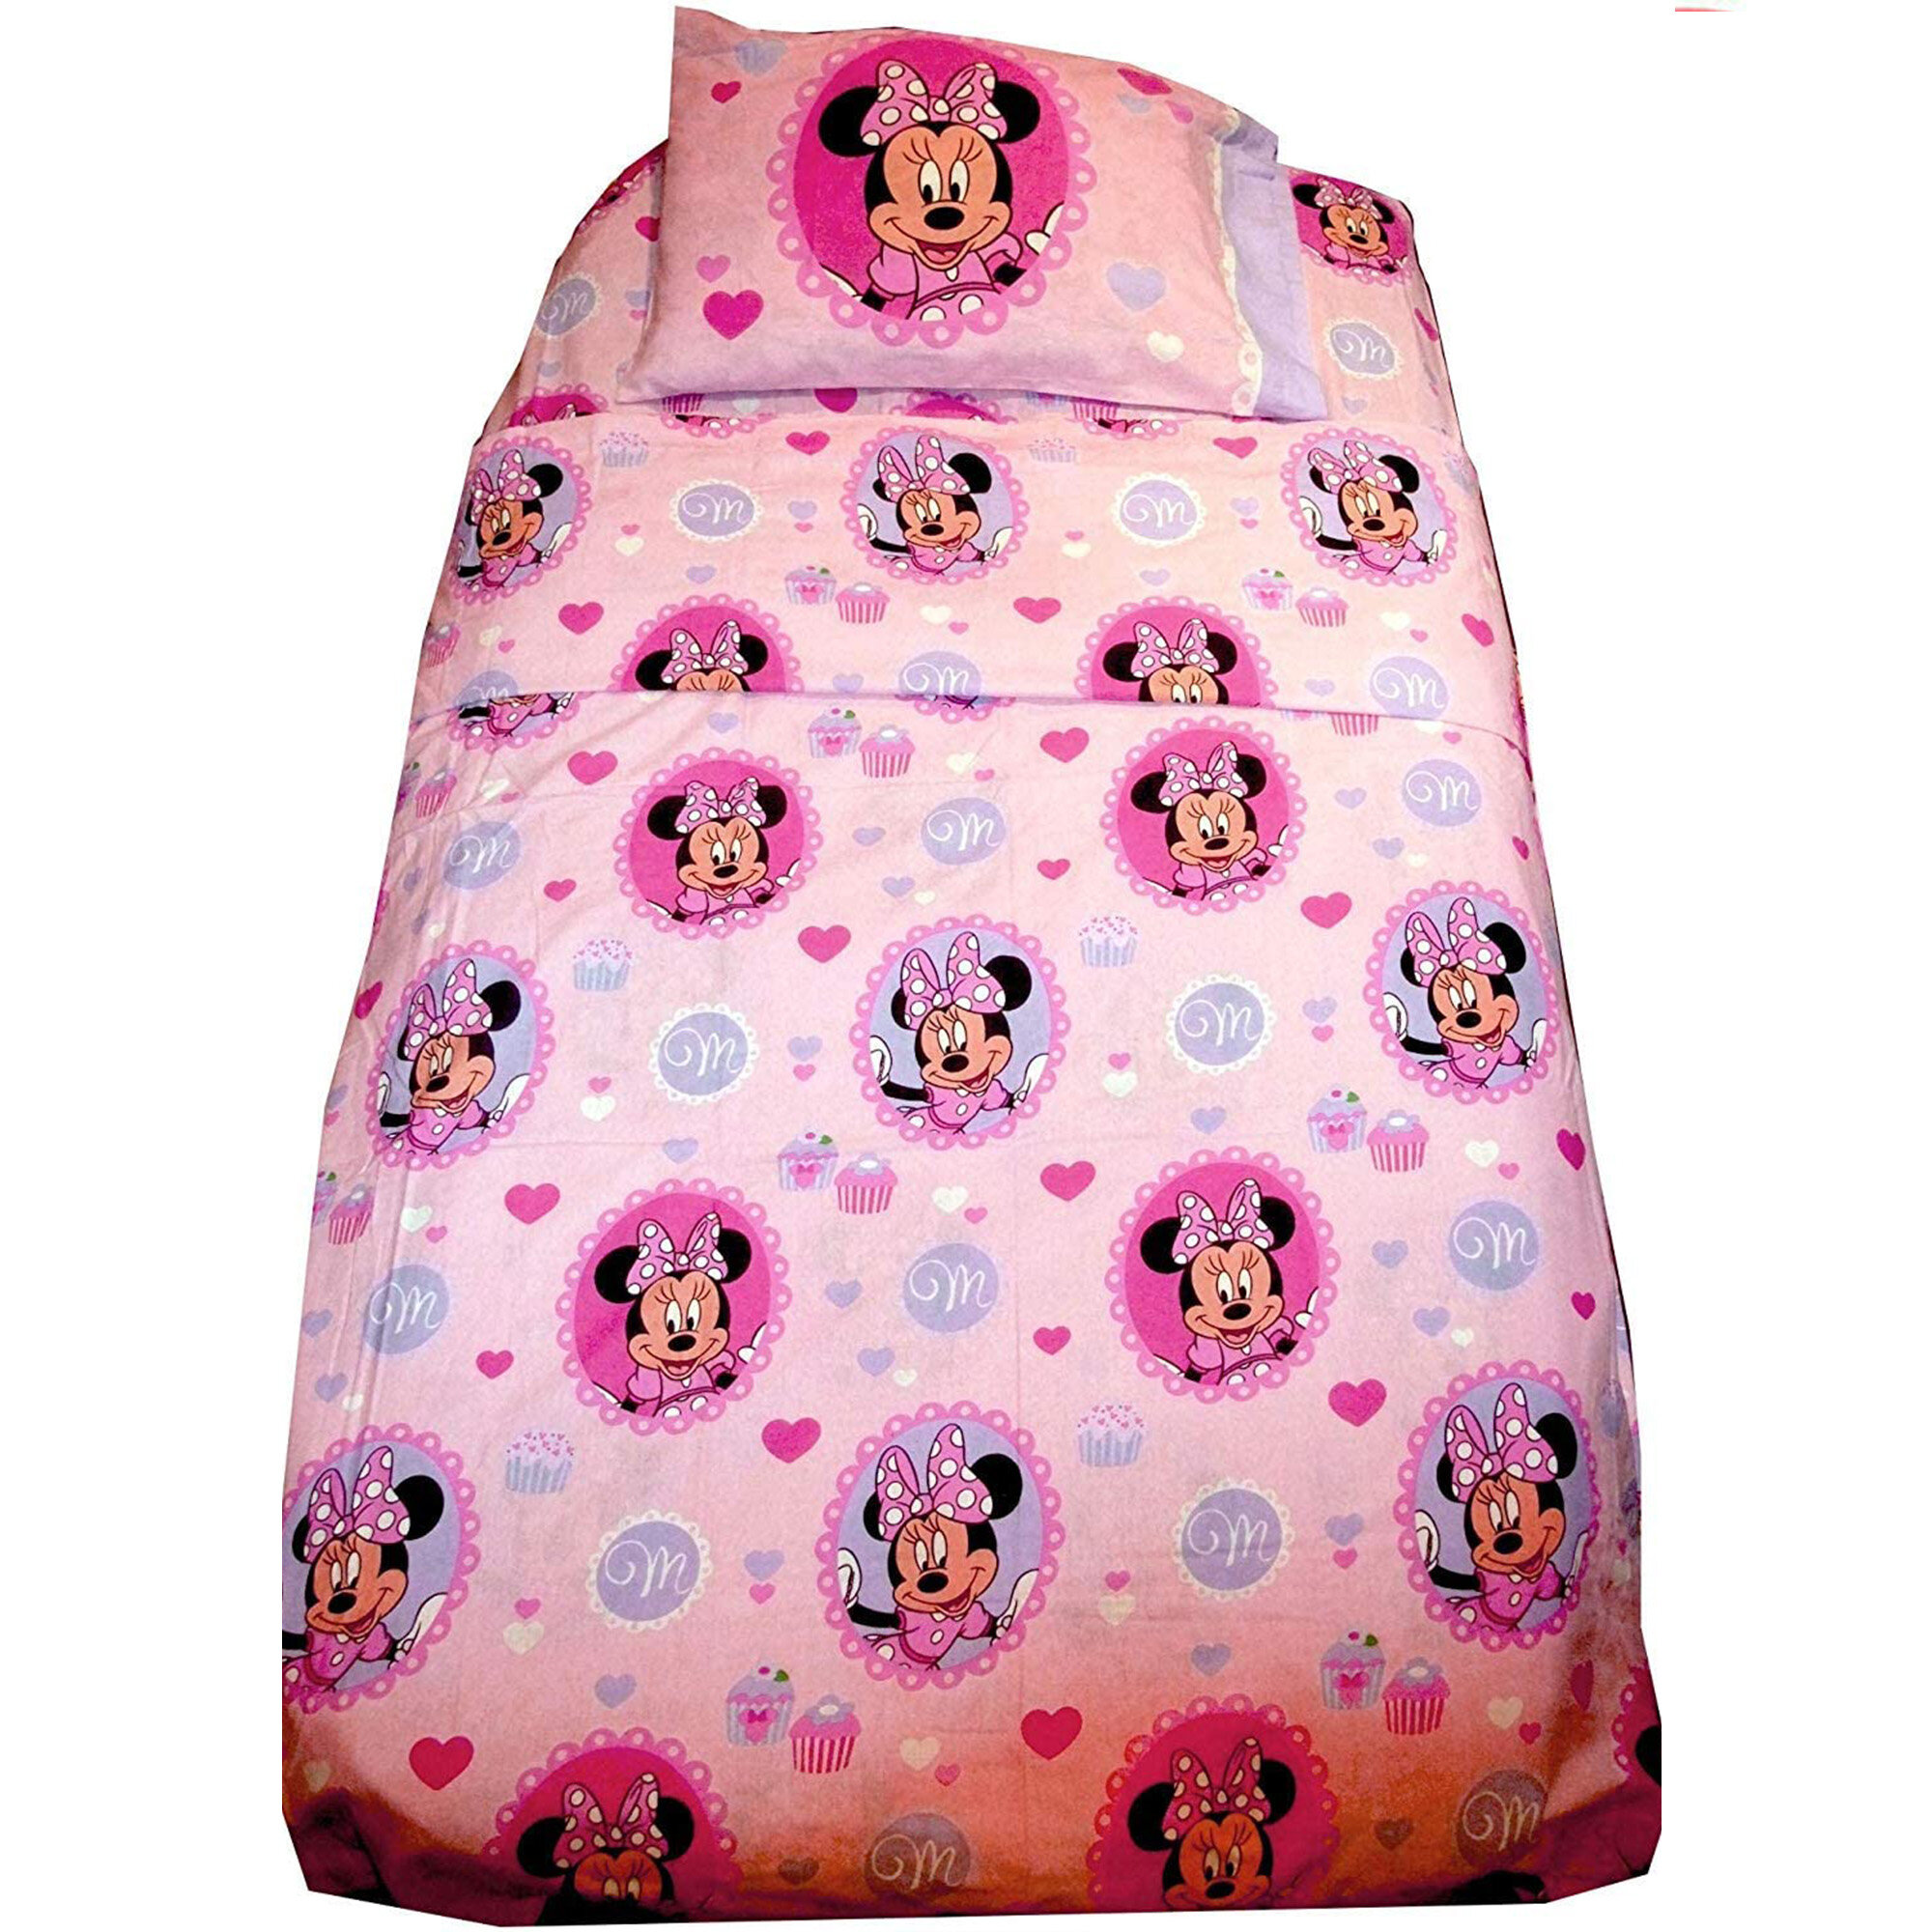 Disney Minnie Mouse Flannel Duvet Cover Set Wayfair